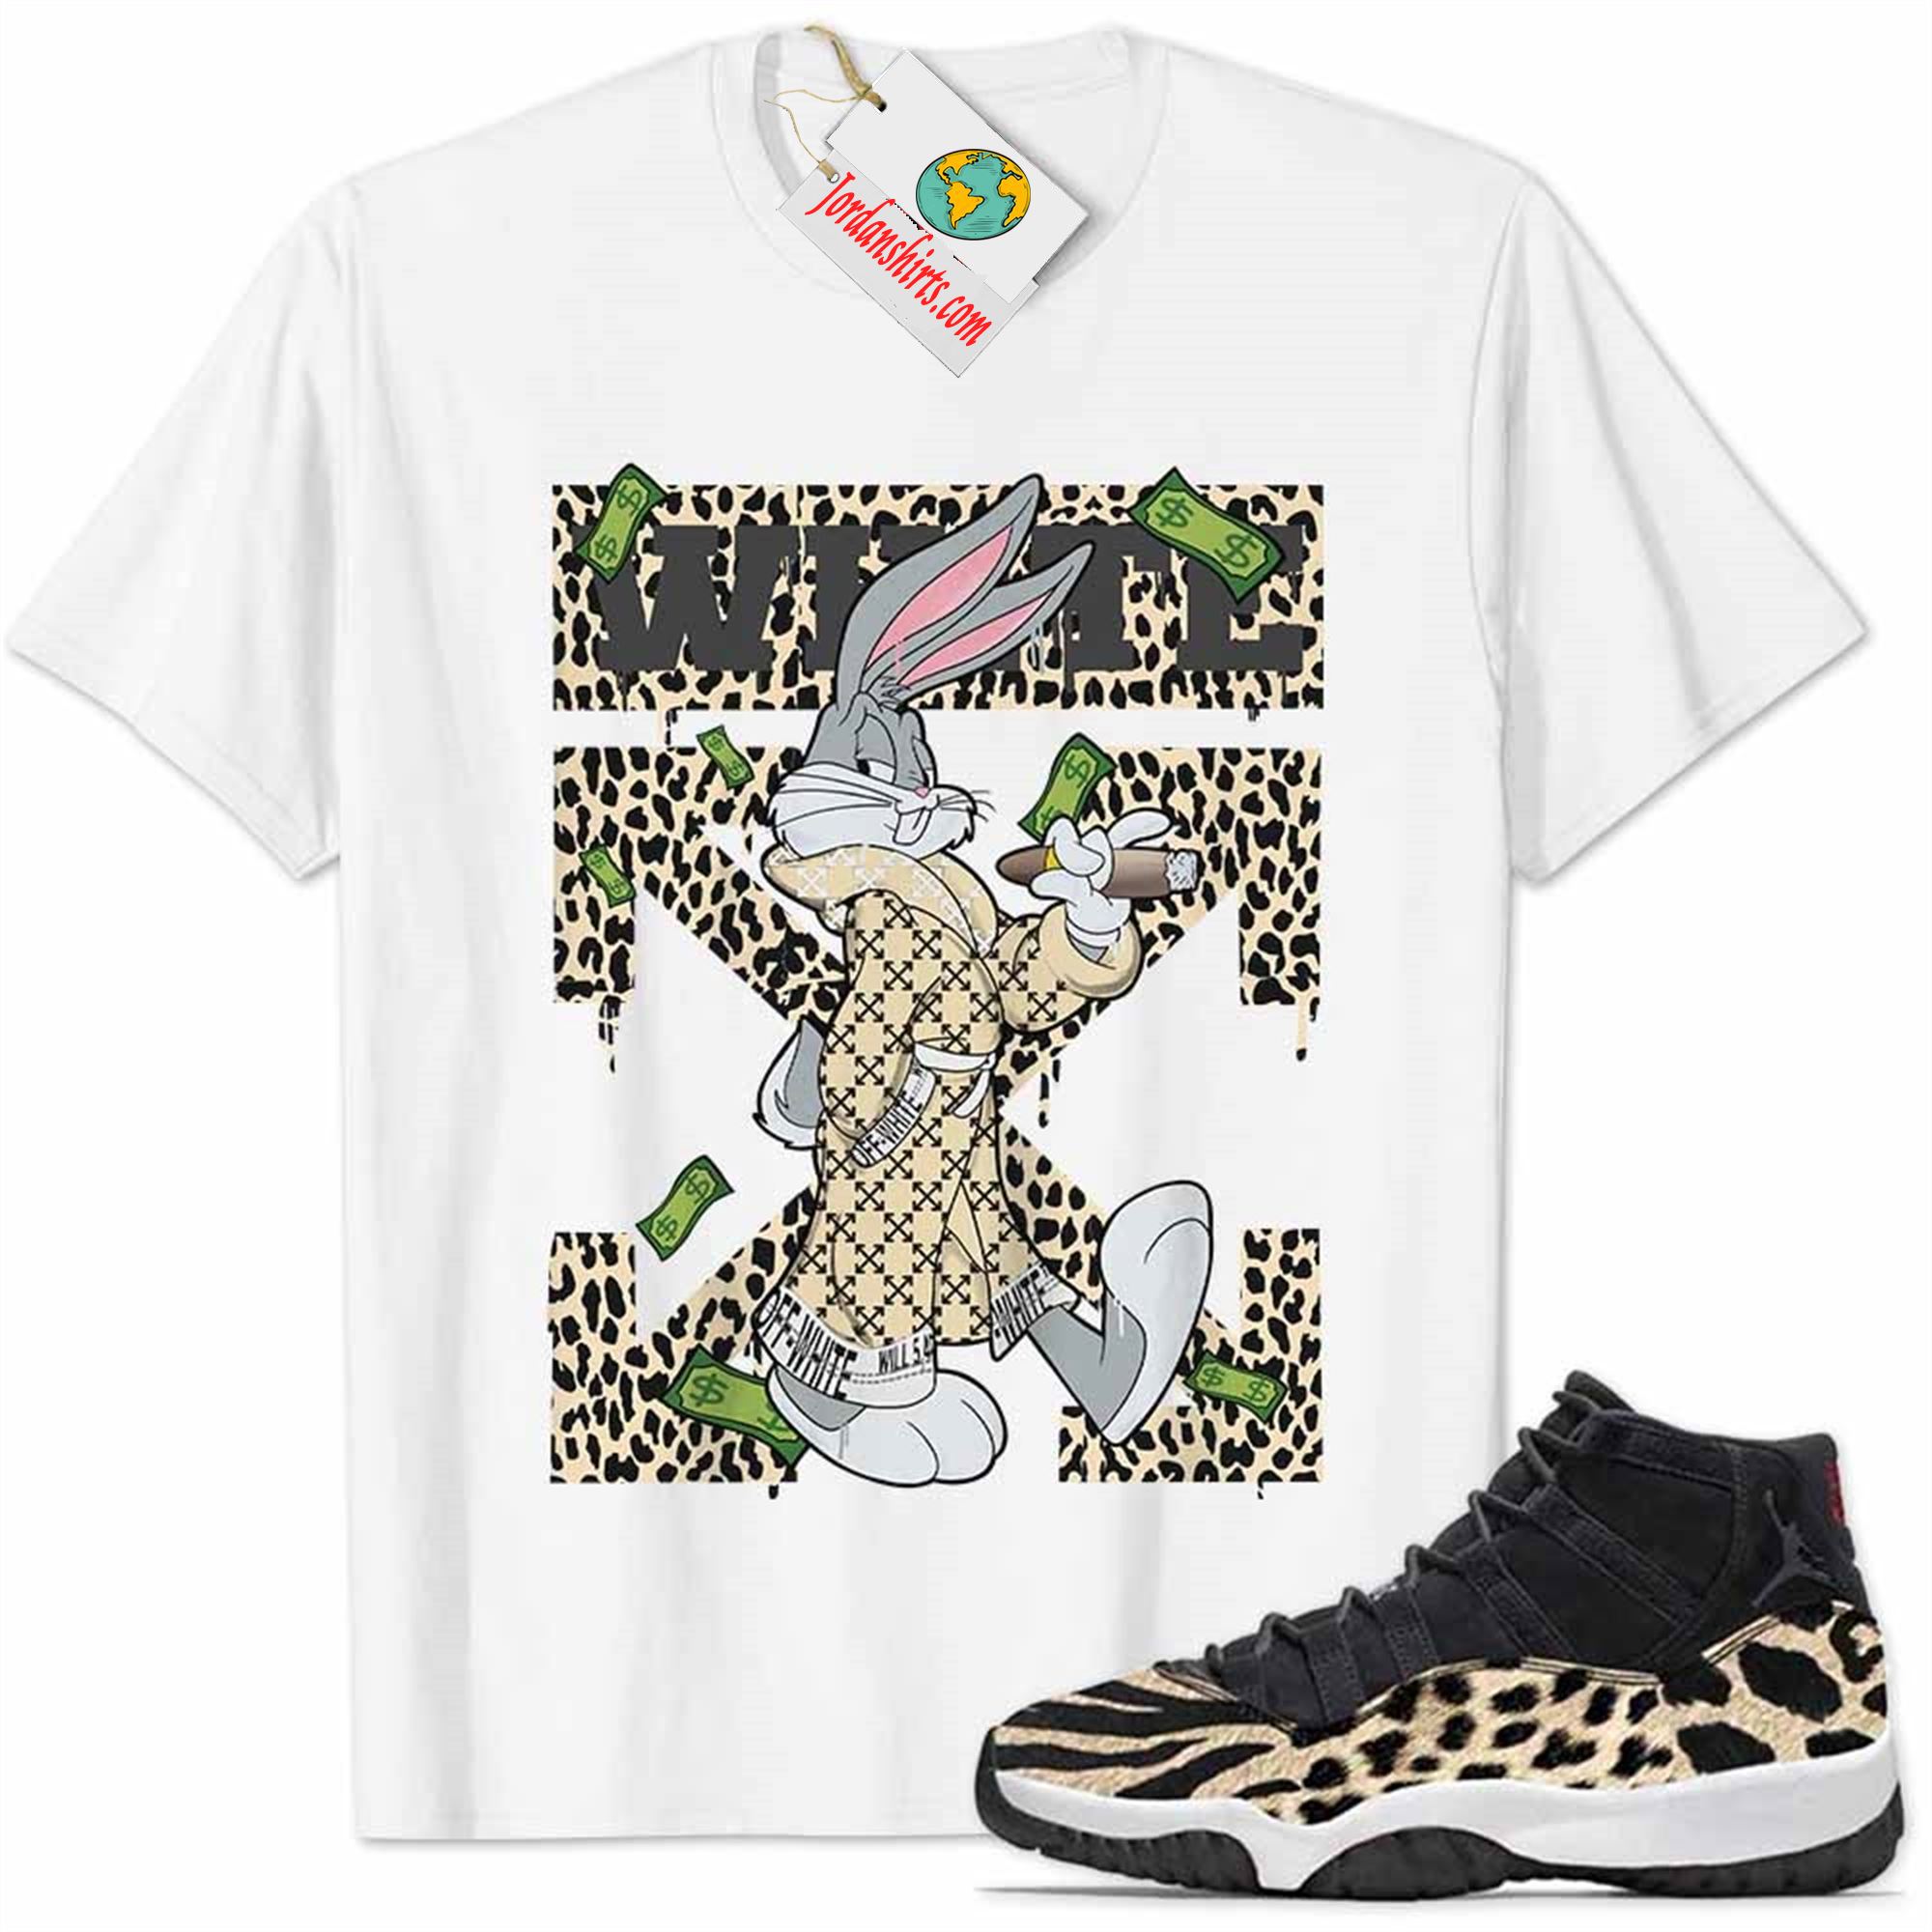 Jordan 11 Shirt, Jordan 11 Animal Print Shirt Bug Bunny Smokes Weed Money Falling White Size Up To 5xl